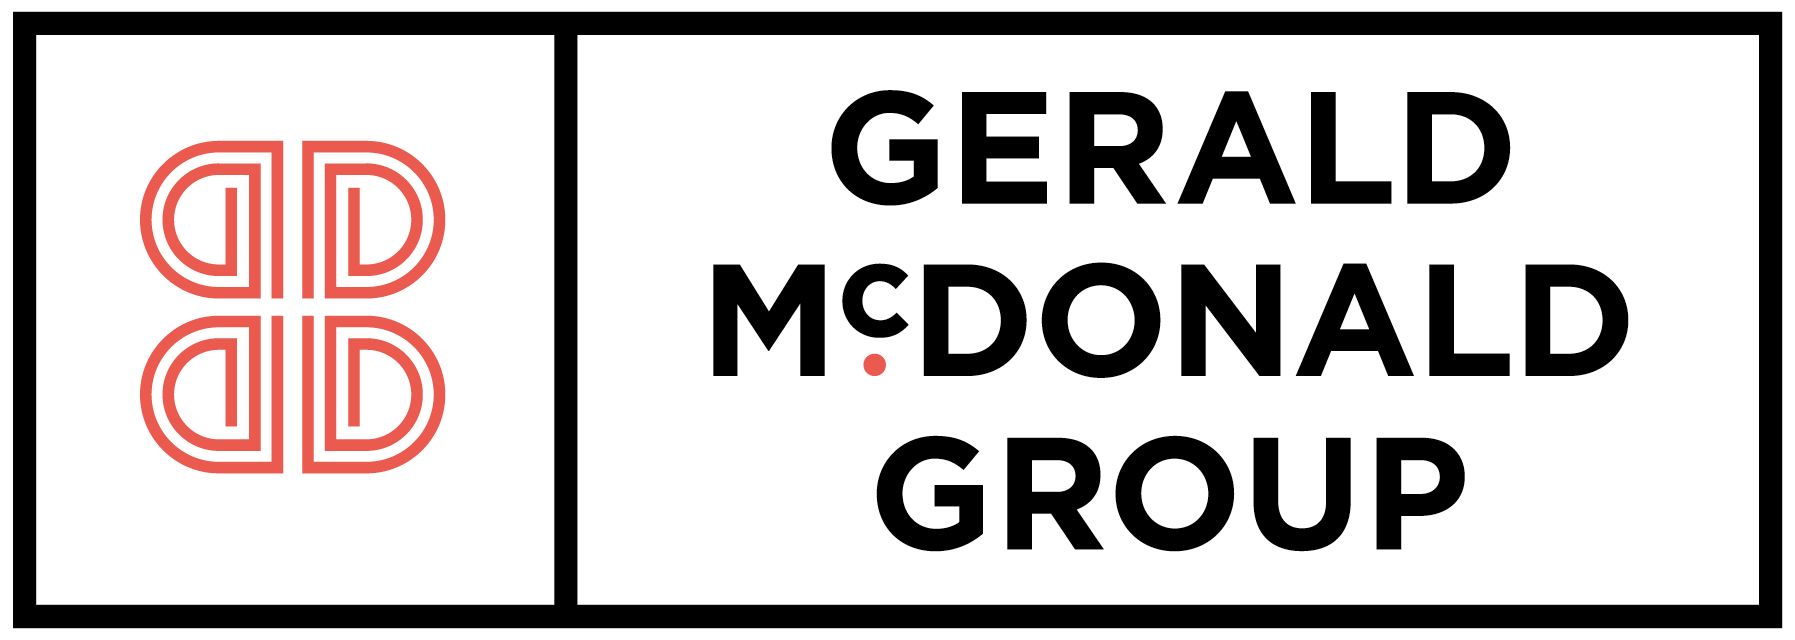 Gerald McDonald Group